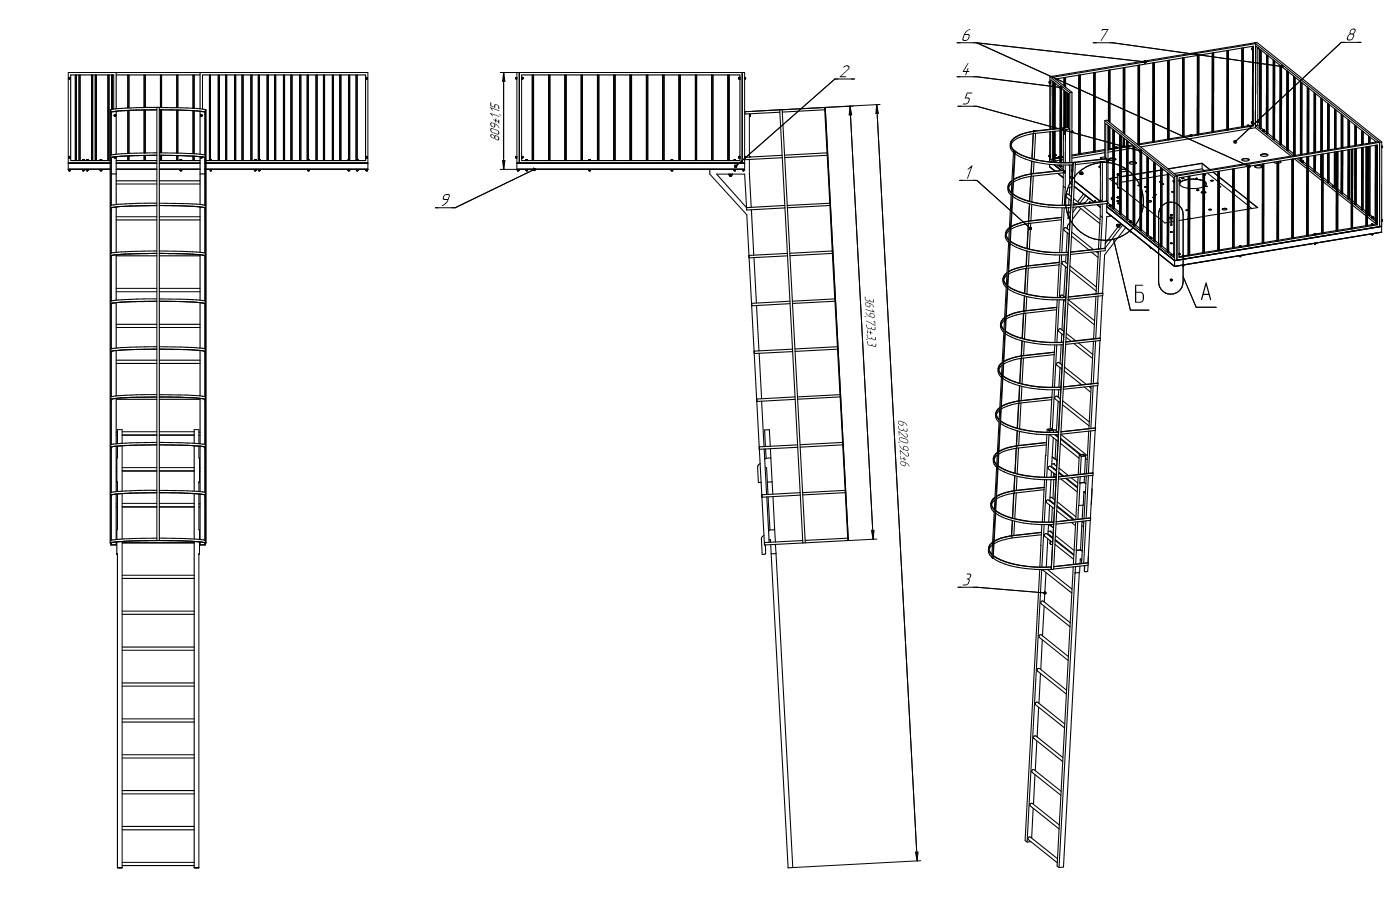 Решения о установке пожарных лестниц описываются в текстовых и графических материалах проекта.